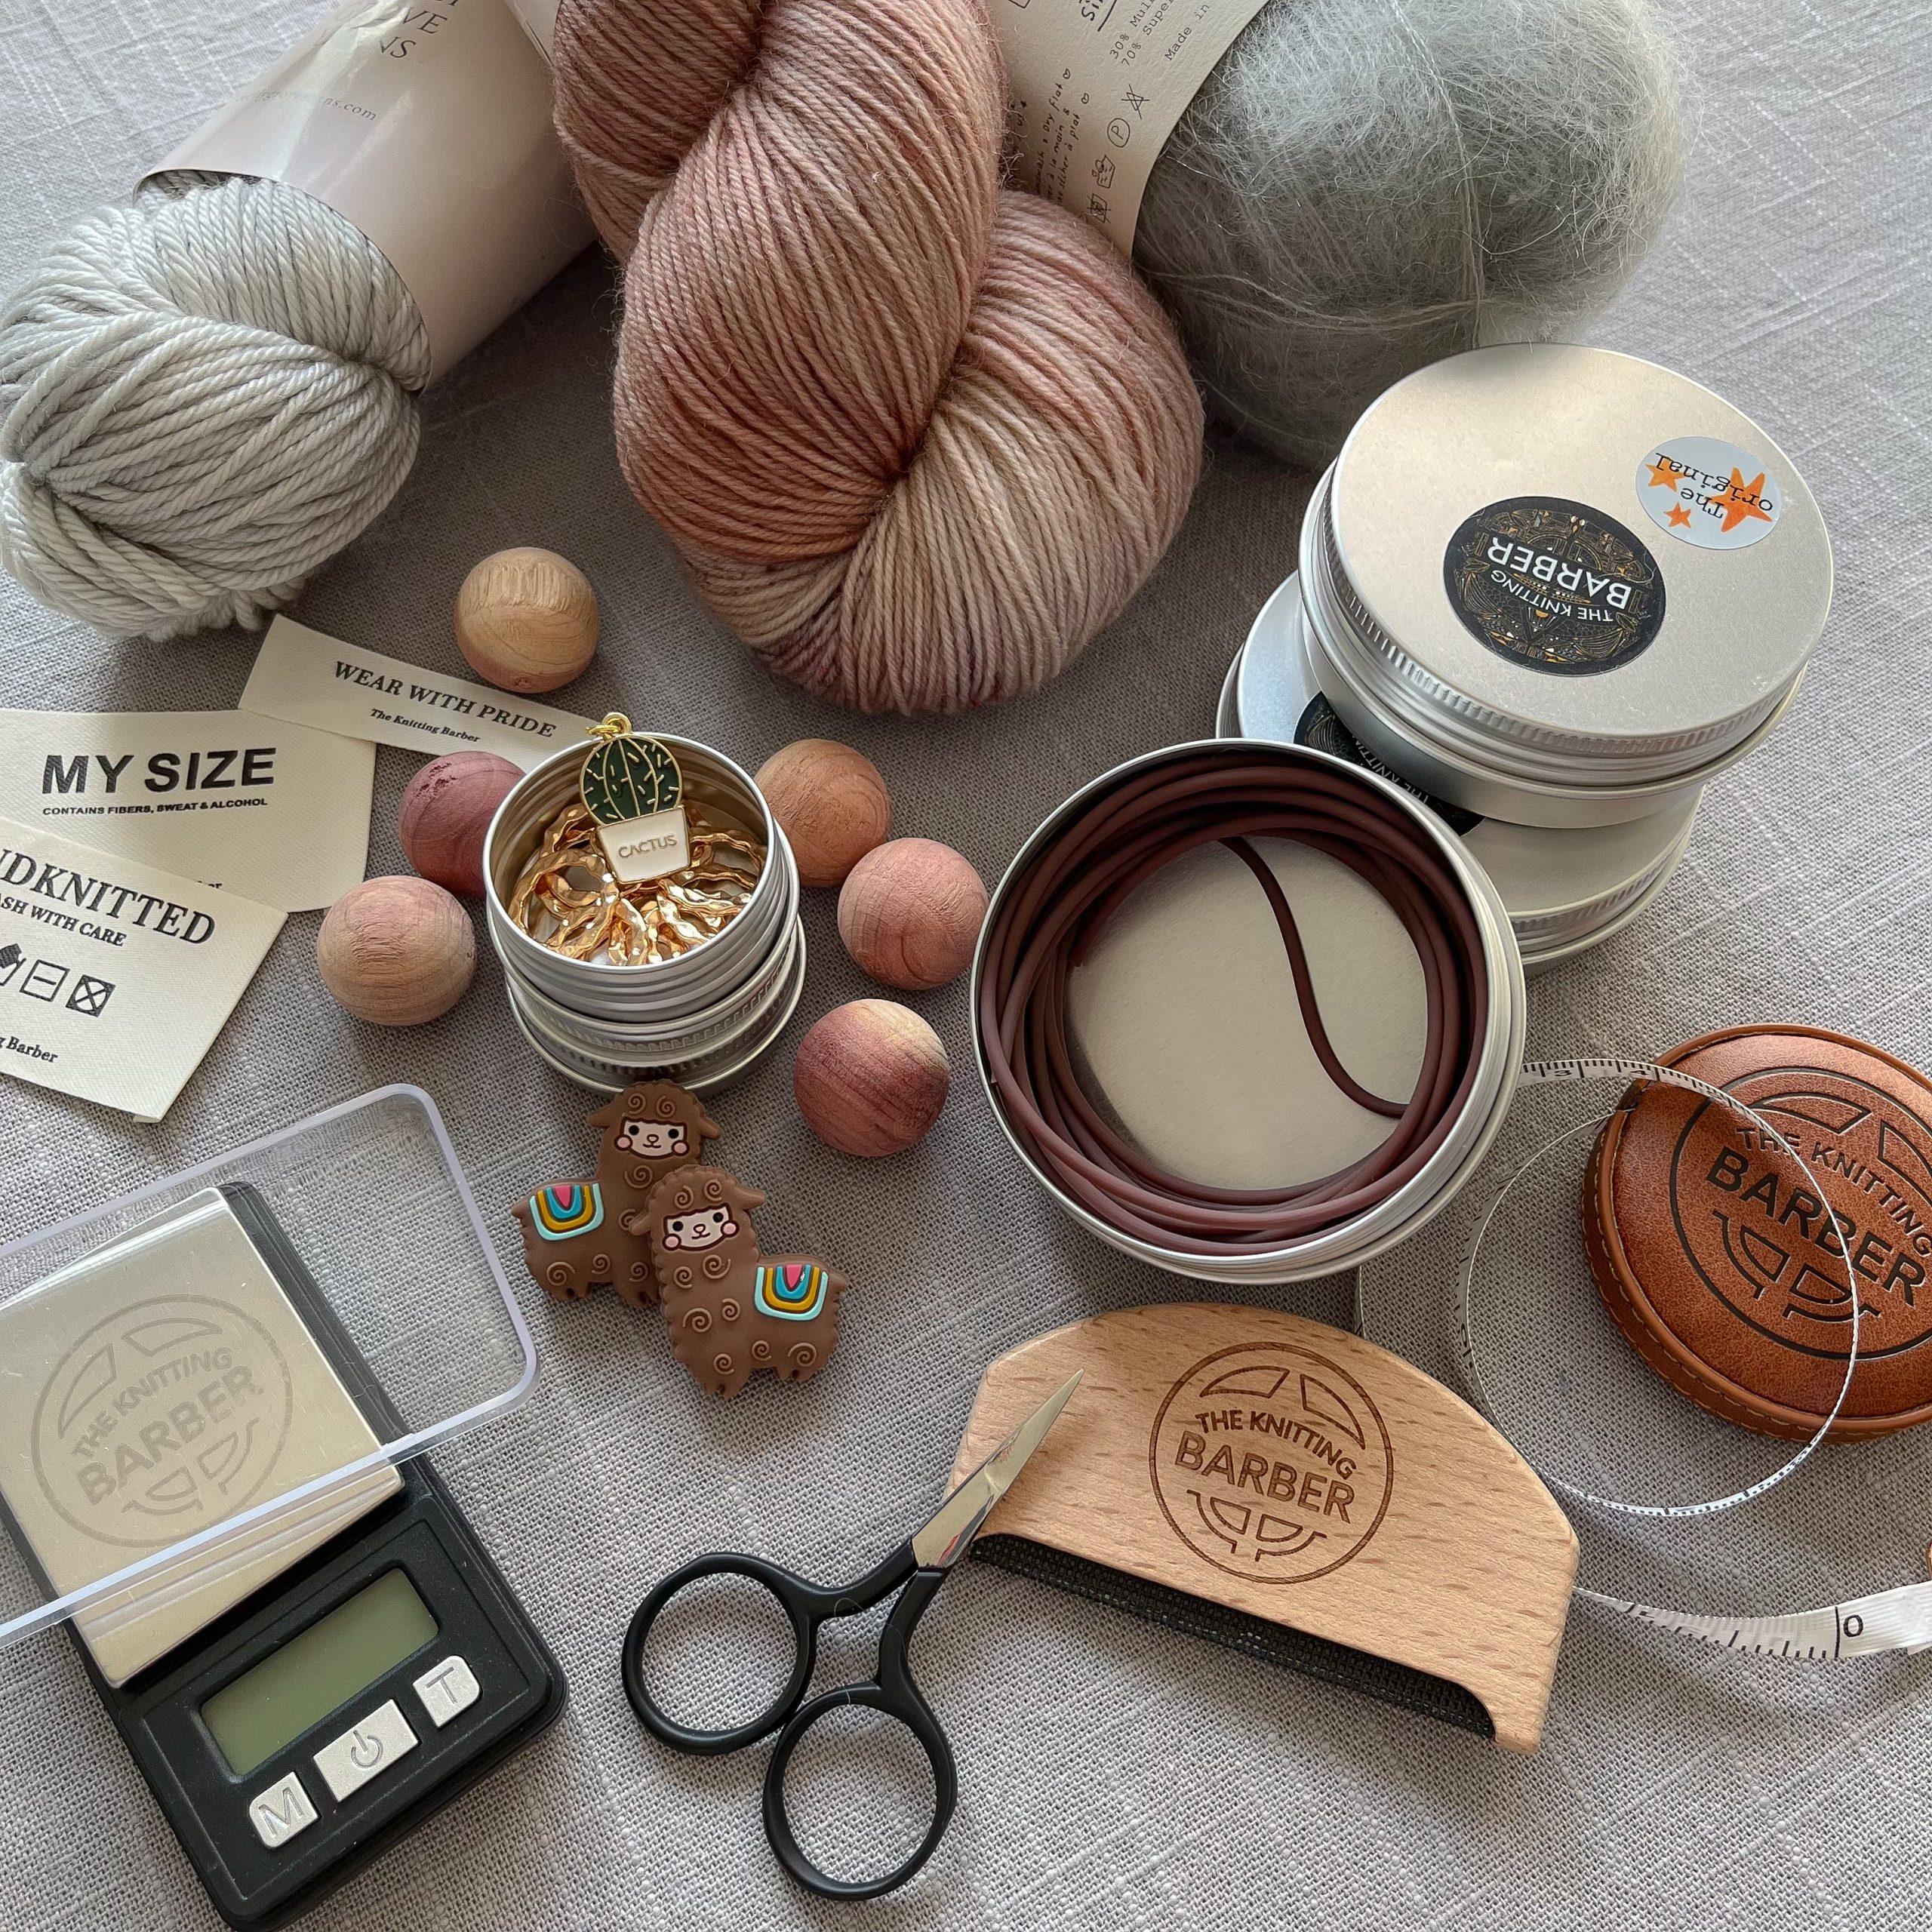 The Knitting Barber Cords – Yarnbyrds, LLC